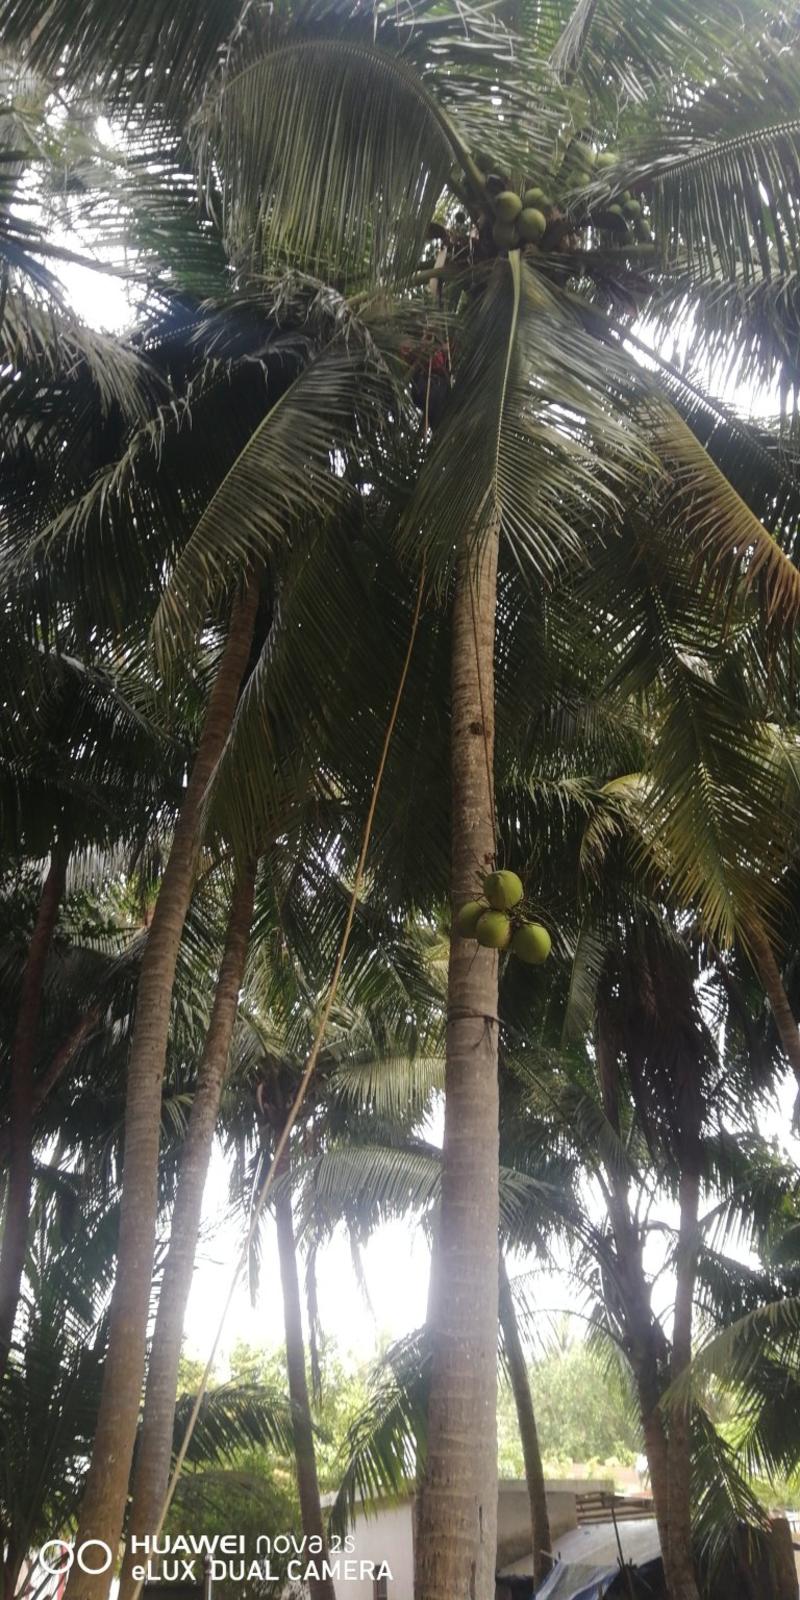 天然带皮椰青，天然水。包邮当季新鲜椰子。